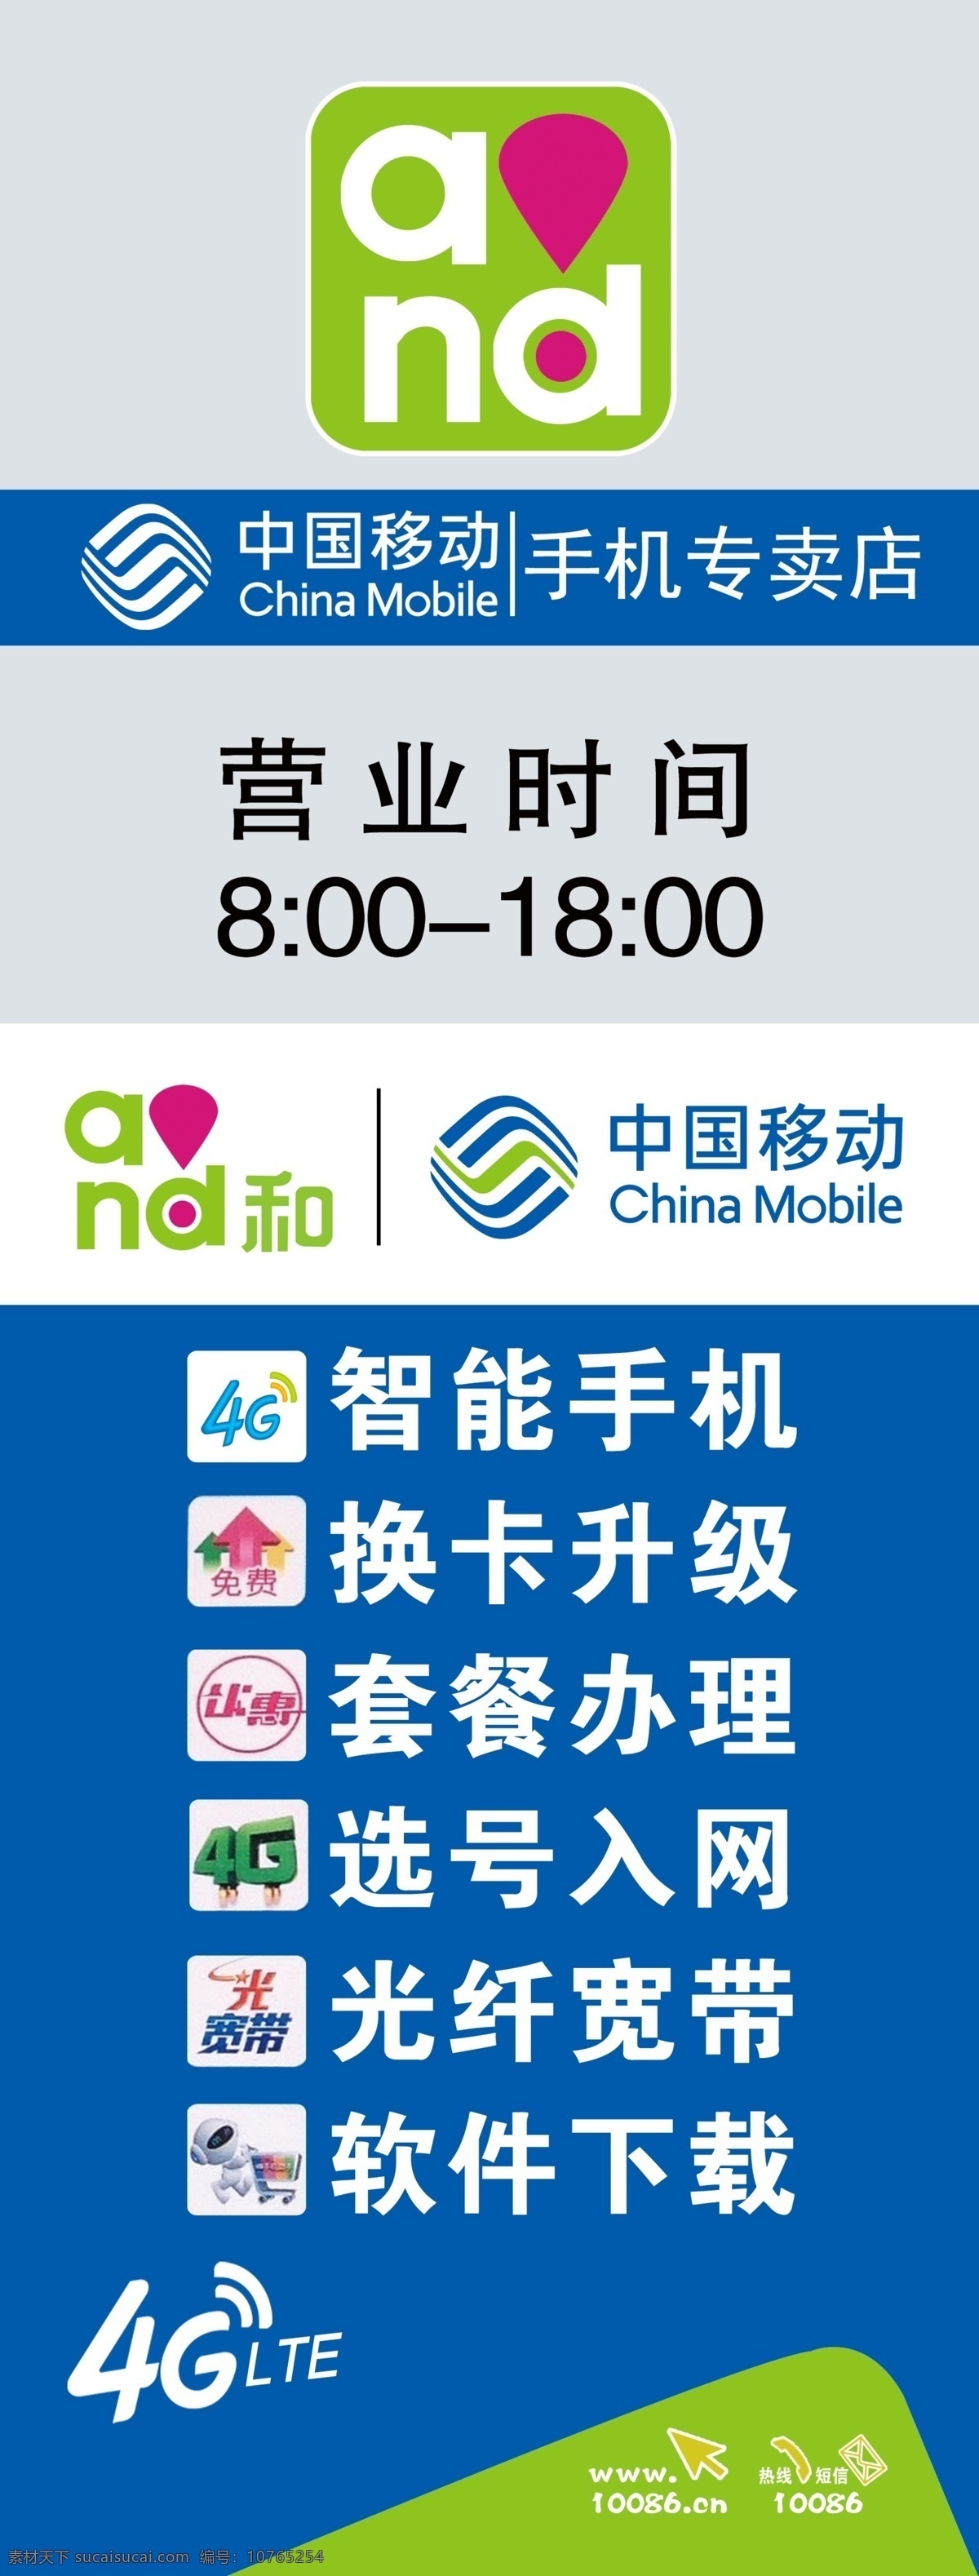 中国移动 营业 时间 移动标志 智能手机 换卡升级 套餐办理 选号入网 光纤宽带 软件下载 分层